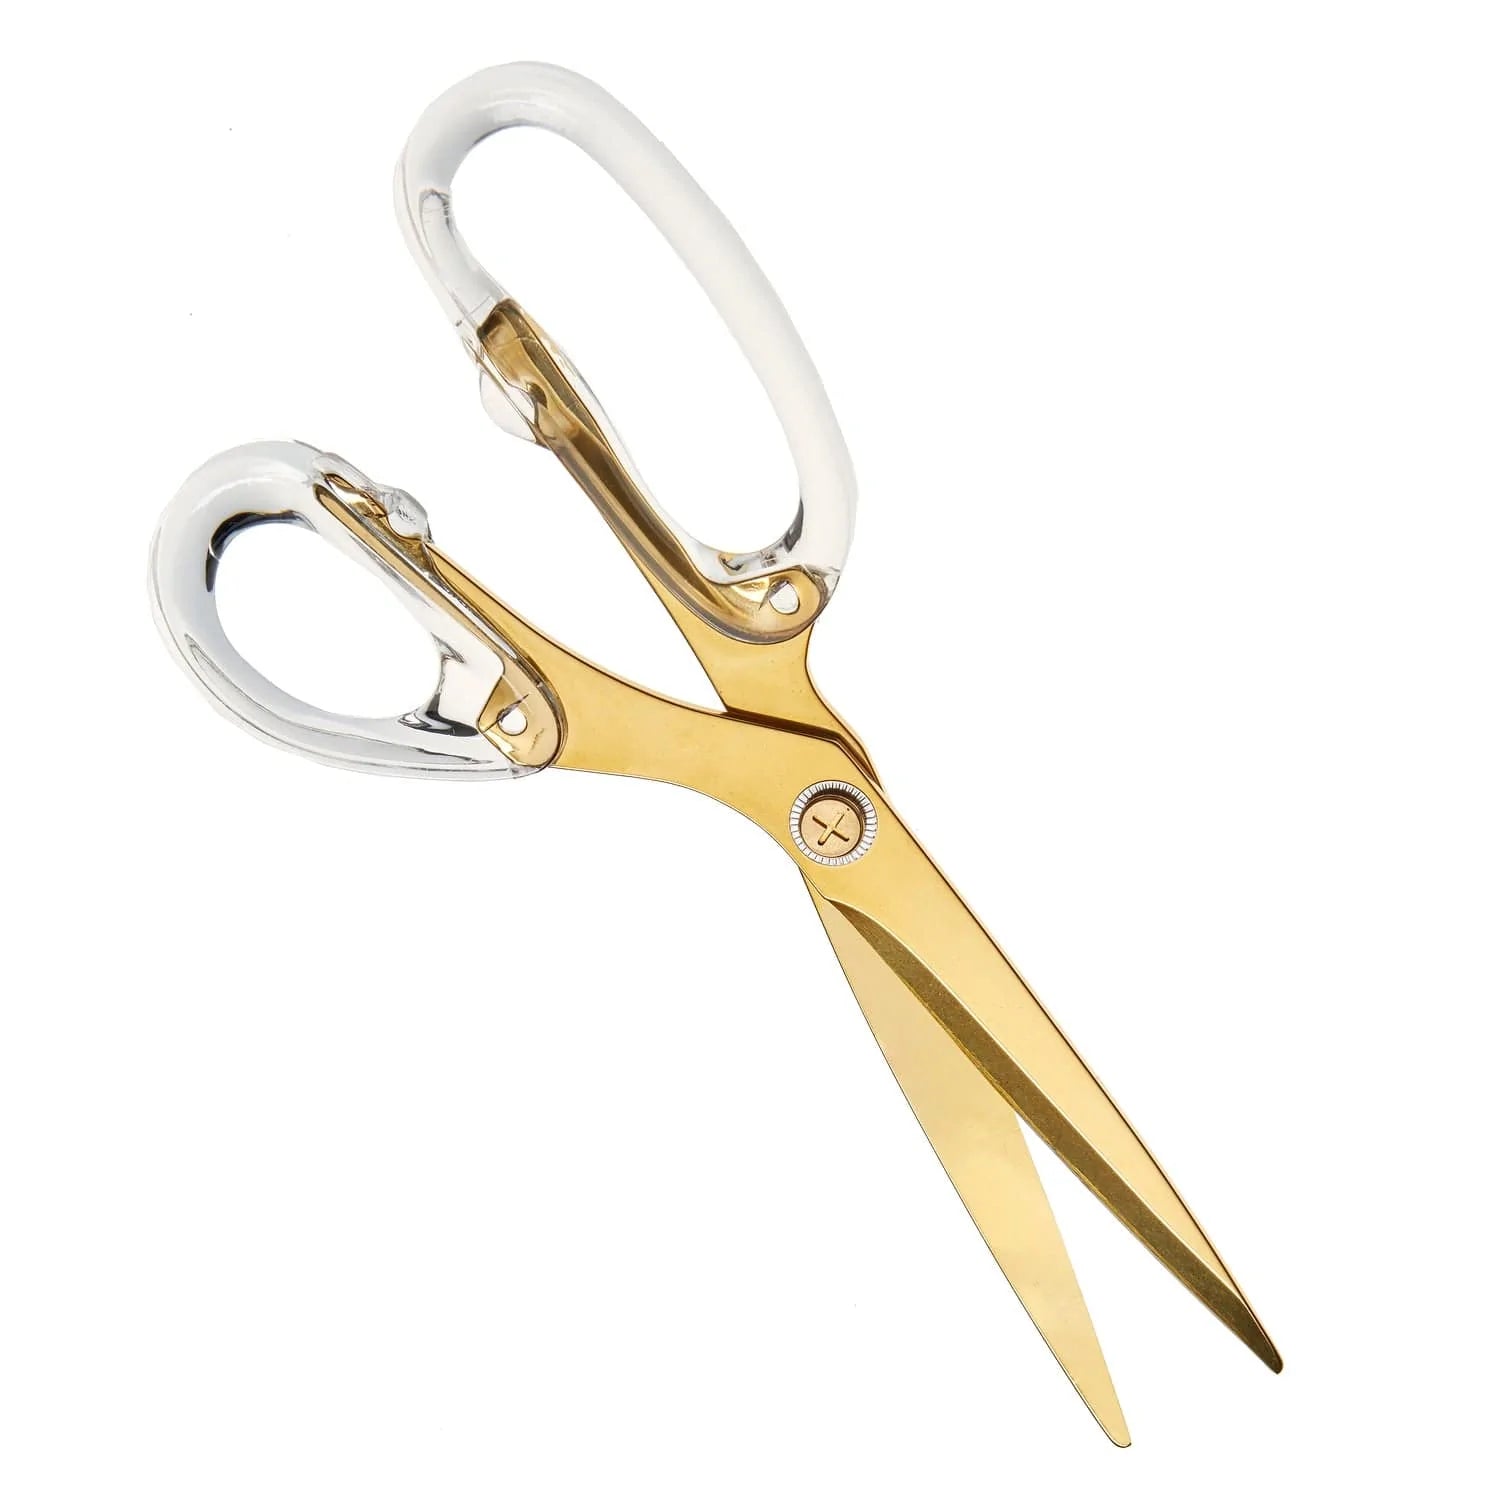 russell+hazel Gold & Acrylic Scissor - Scissors - 9 in